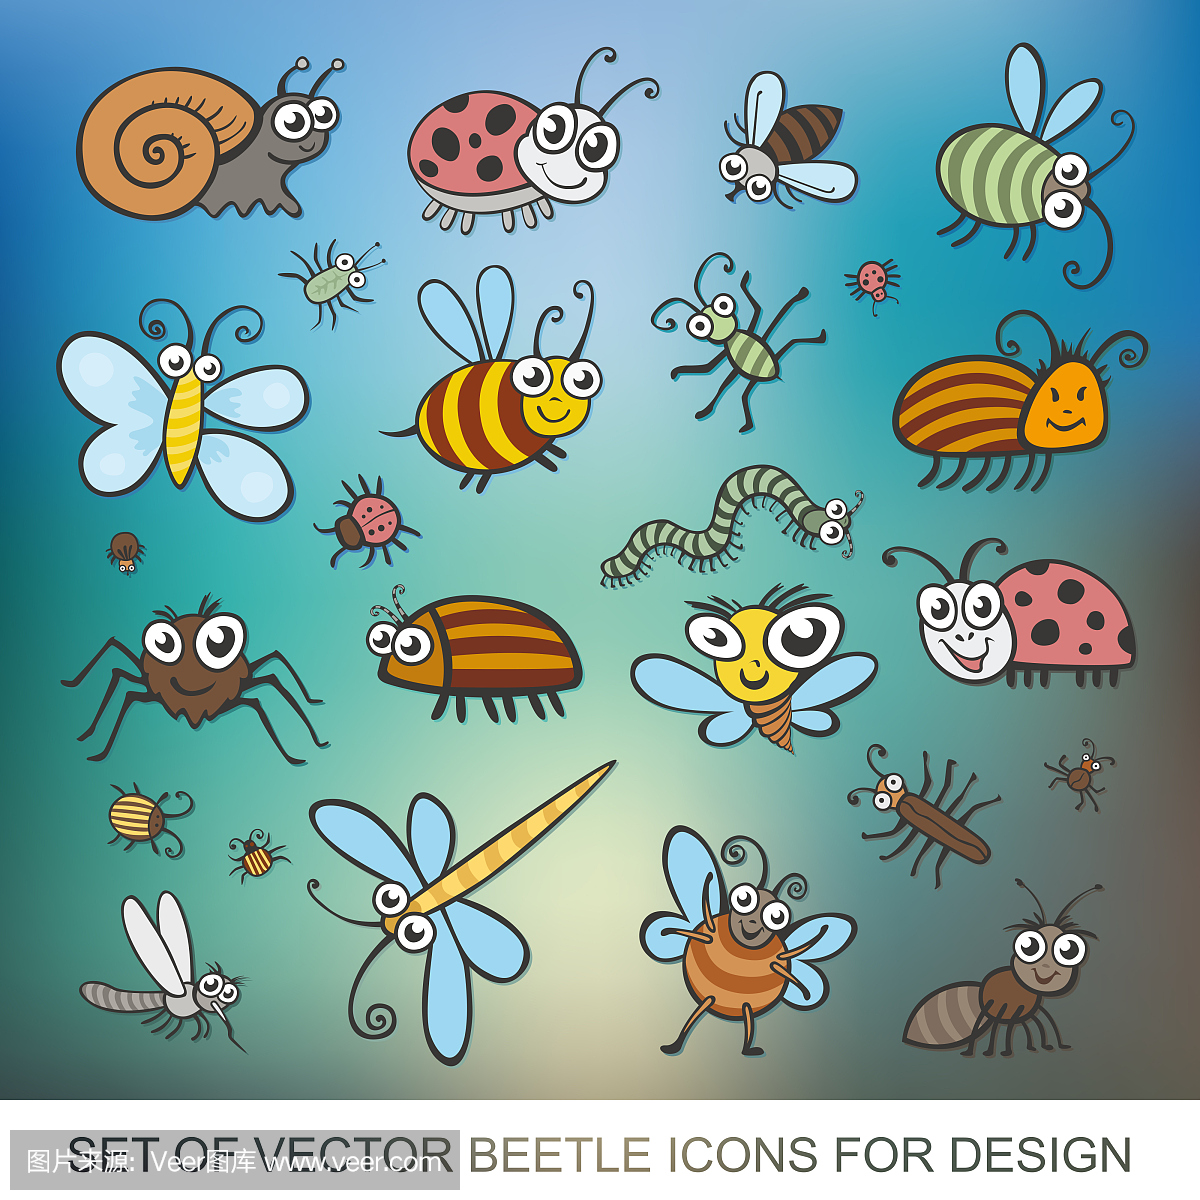 黄蜂,蝴蝶,蠕虫,毛虫,甲虫,瓢虫,蚱蜢,飞,蚊子,蜻